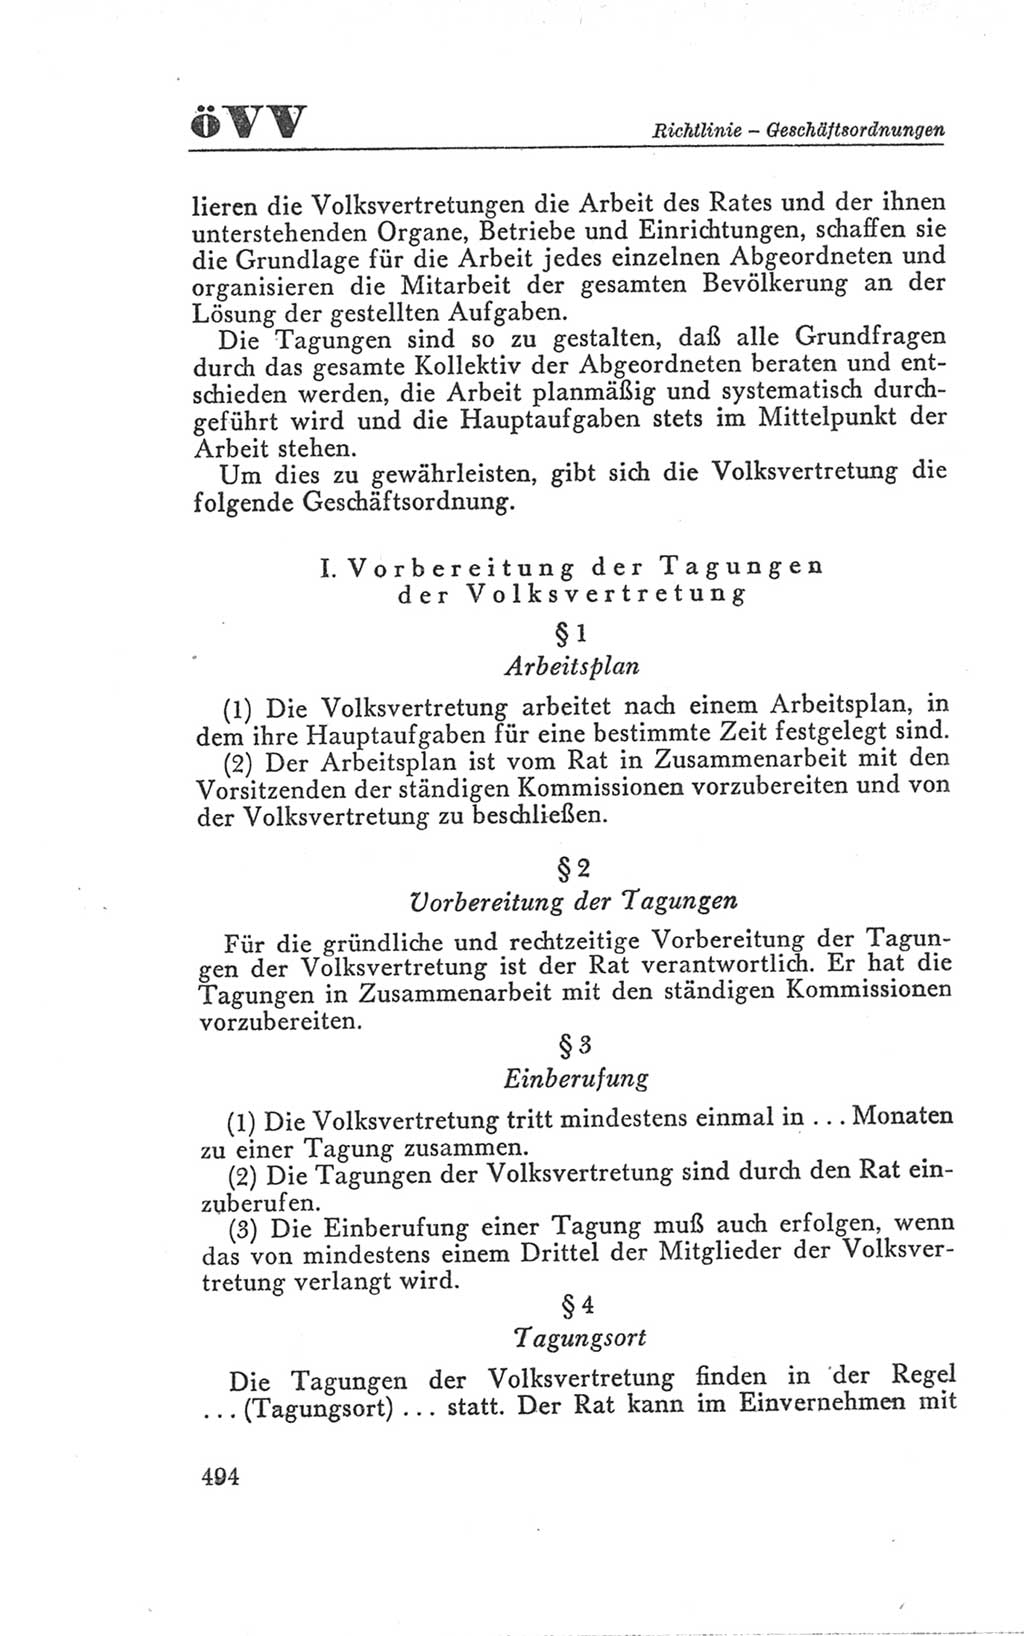 Handbuch der Volkskammer (VK) der Deutschen Demokratischen Republik (DDR), 3. Wahlperiode 1958-1963, Seite 494 (Hdb. VK. DDR 3. WP. 1958-1963, S. 494)